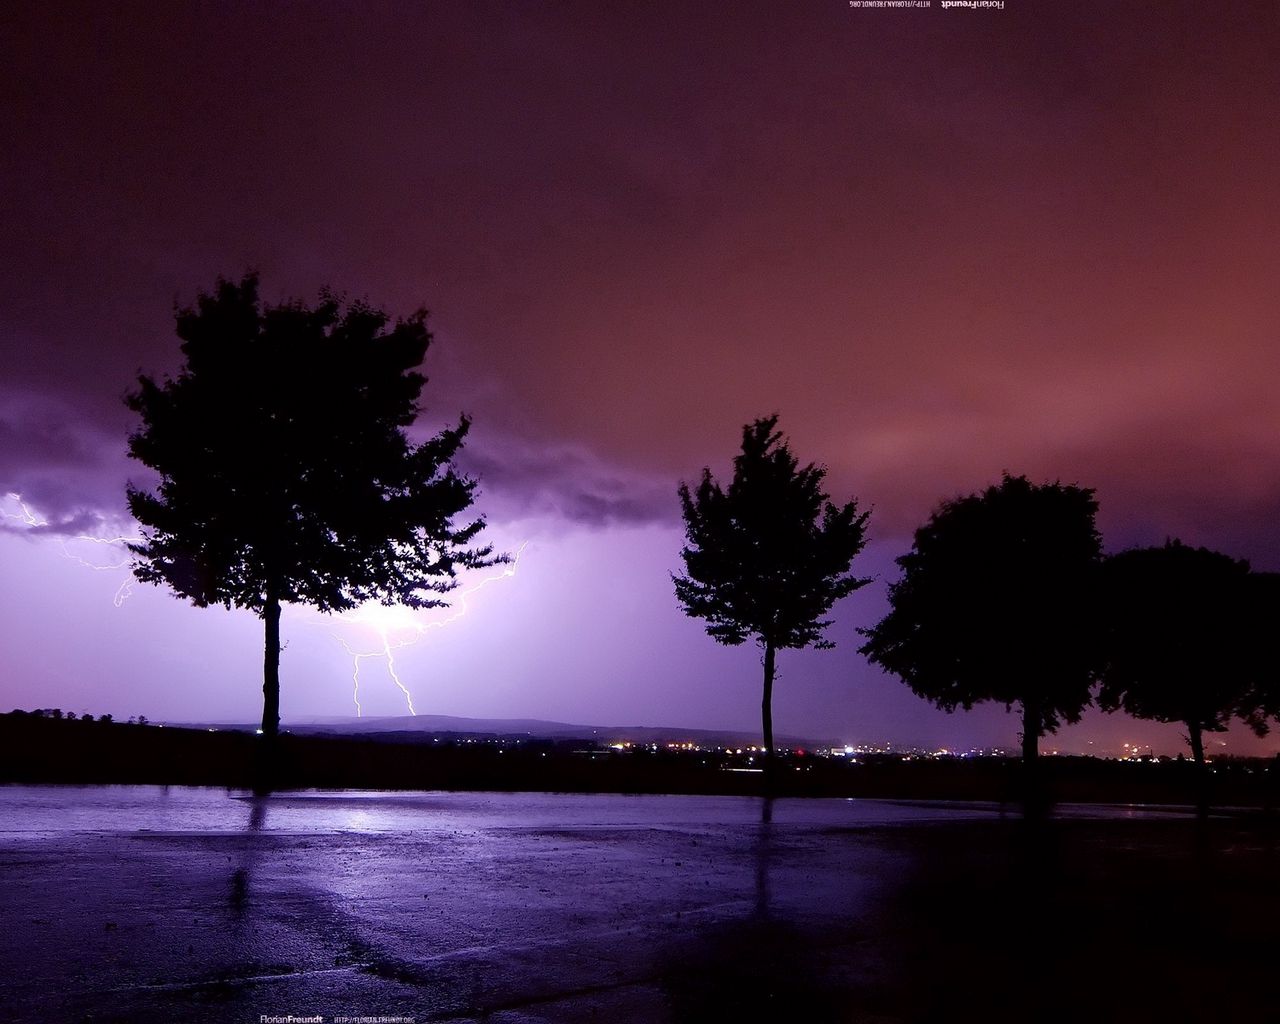 A lightning bolt strikes the sky over trees - Lightning